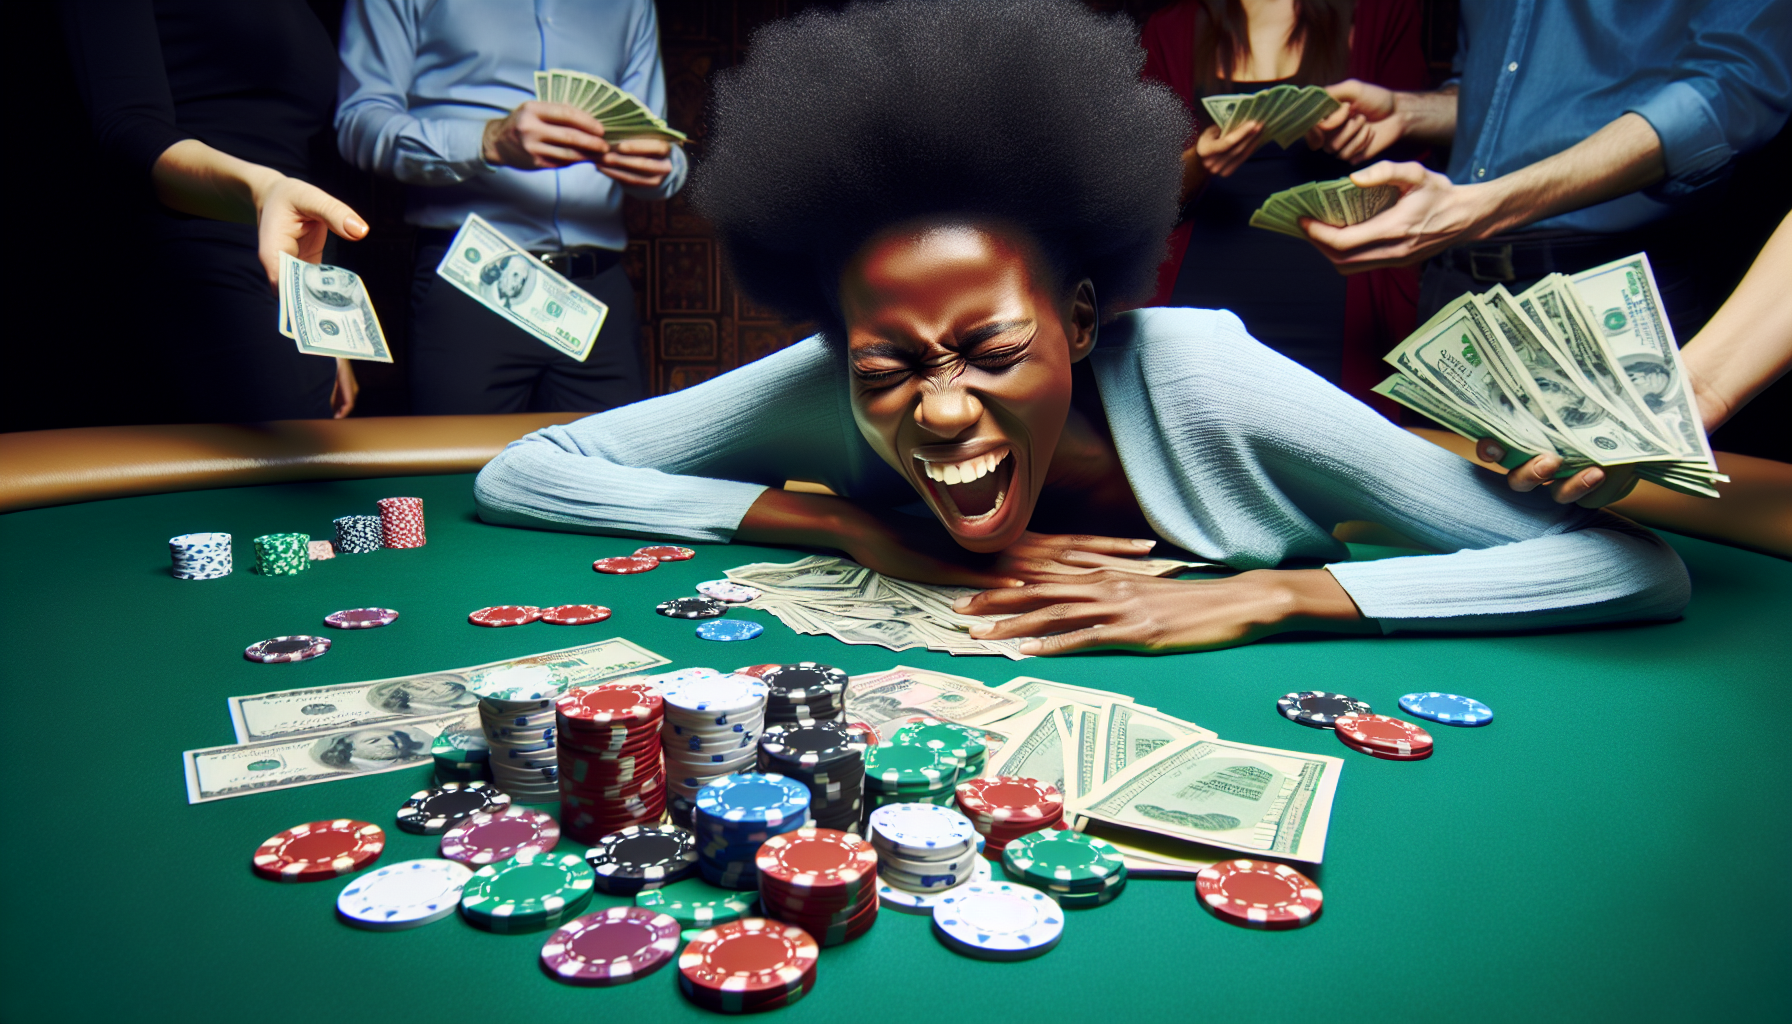 découvrez comment gagner de l'argent en jouant au poker. apprenez les meilleures stratégies pour maximiser vos gains et devenez un joueur de poker compétent.